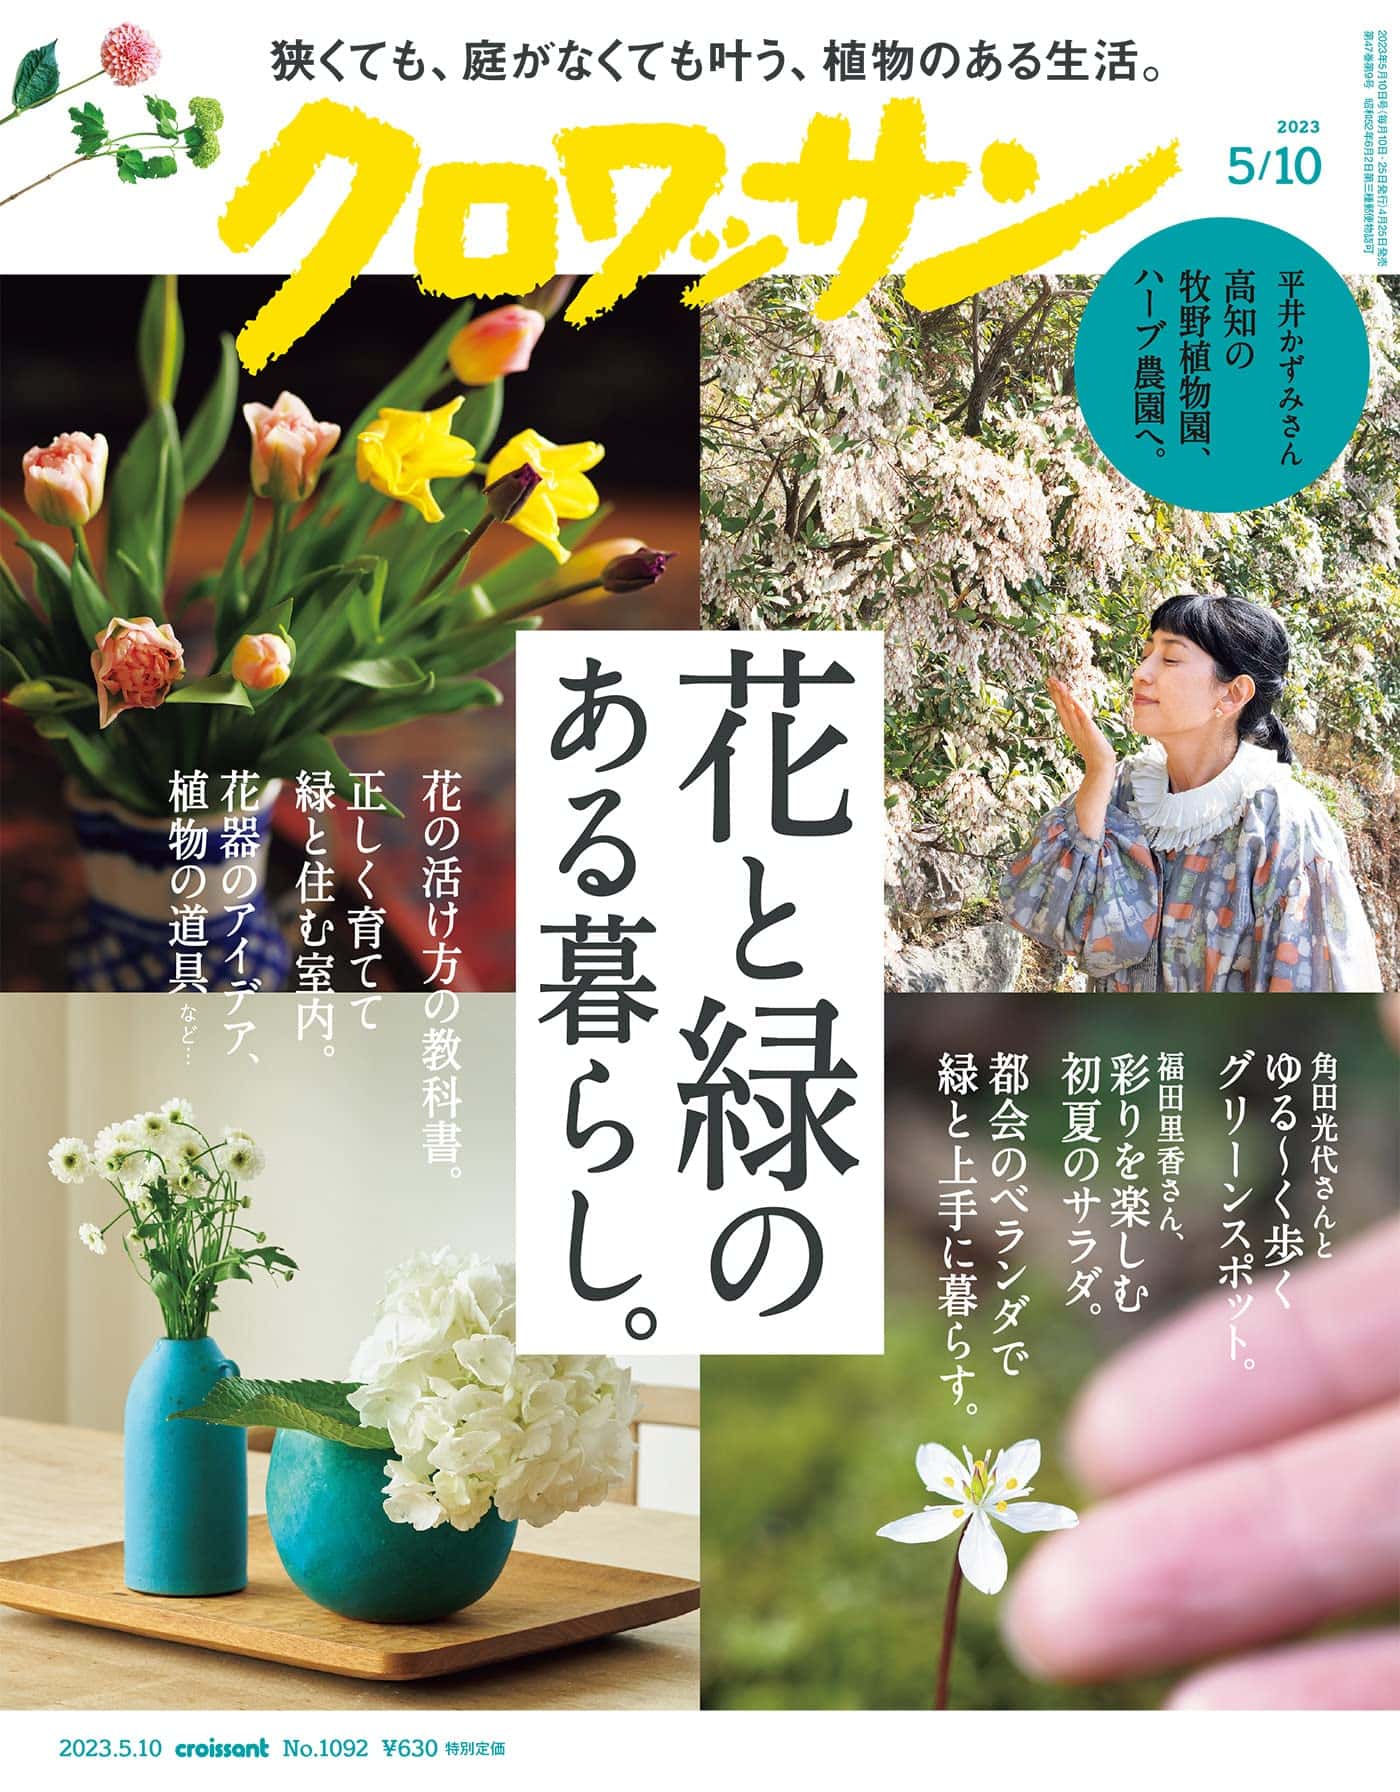 4月25日発売の『クロワッサン』最新号は「花と緑のある暮らし。」